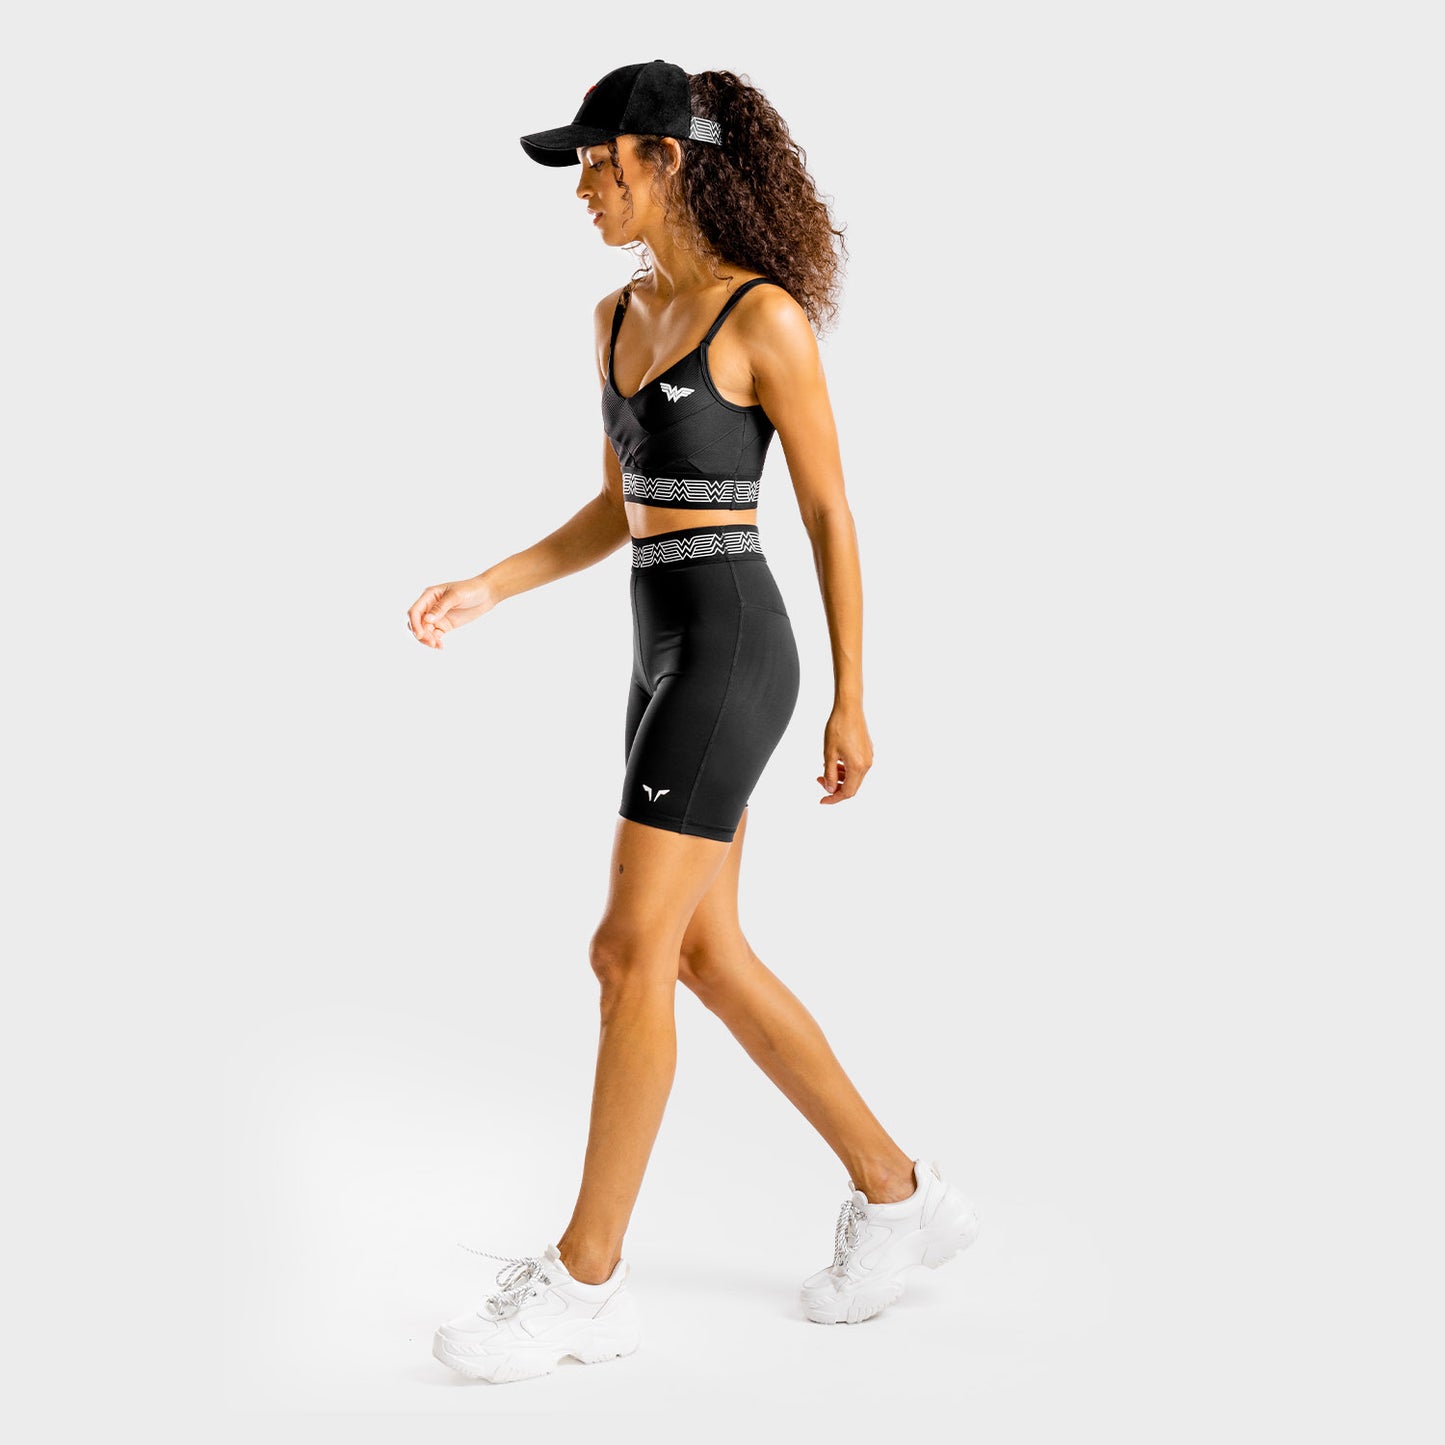 squatwolf-gym-caps-for-women-wonder-woman-cap-black-workout-clothes